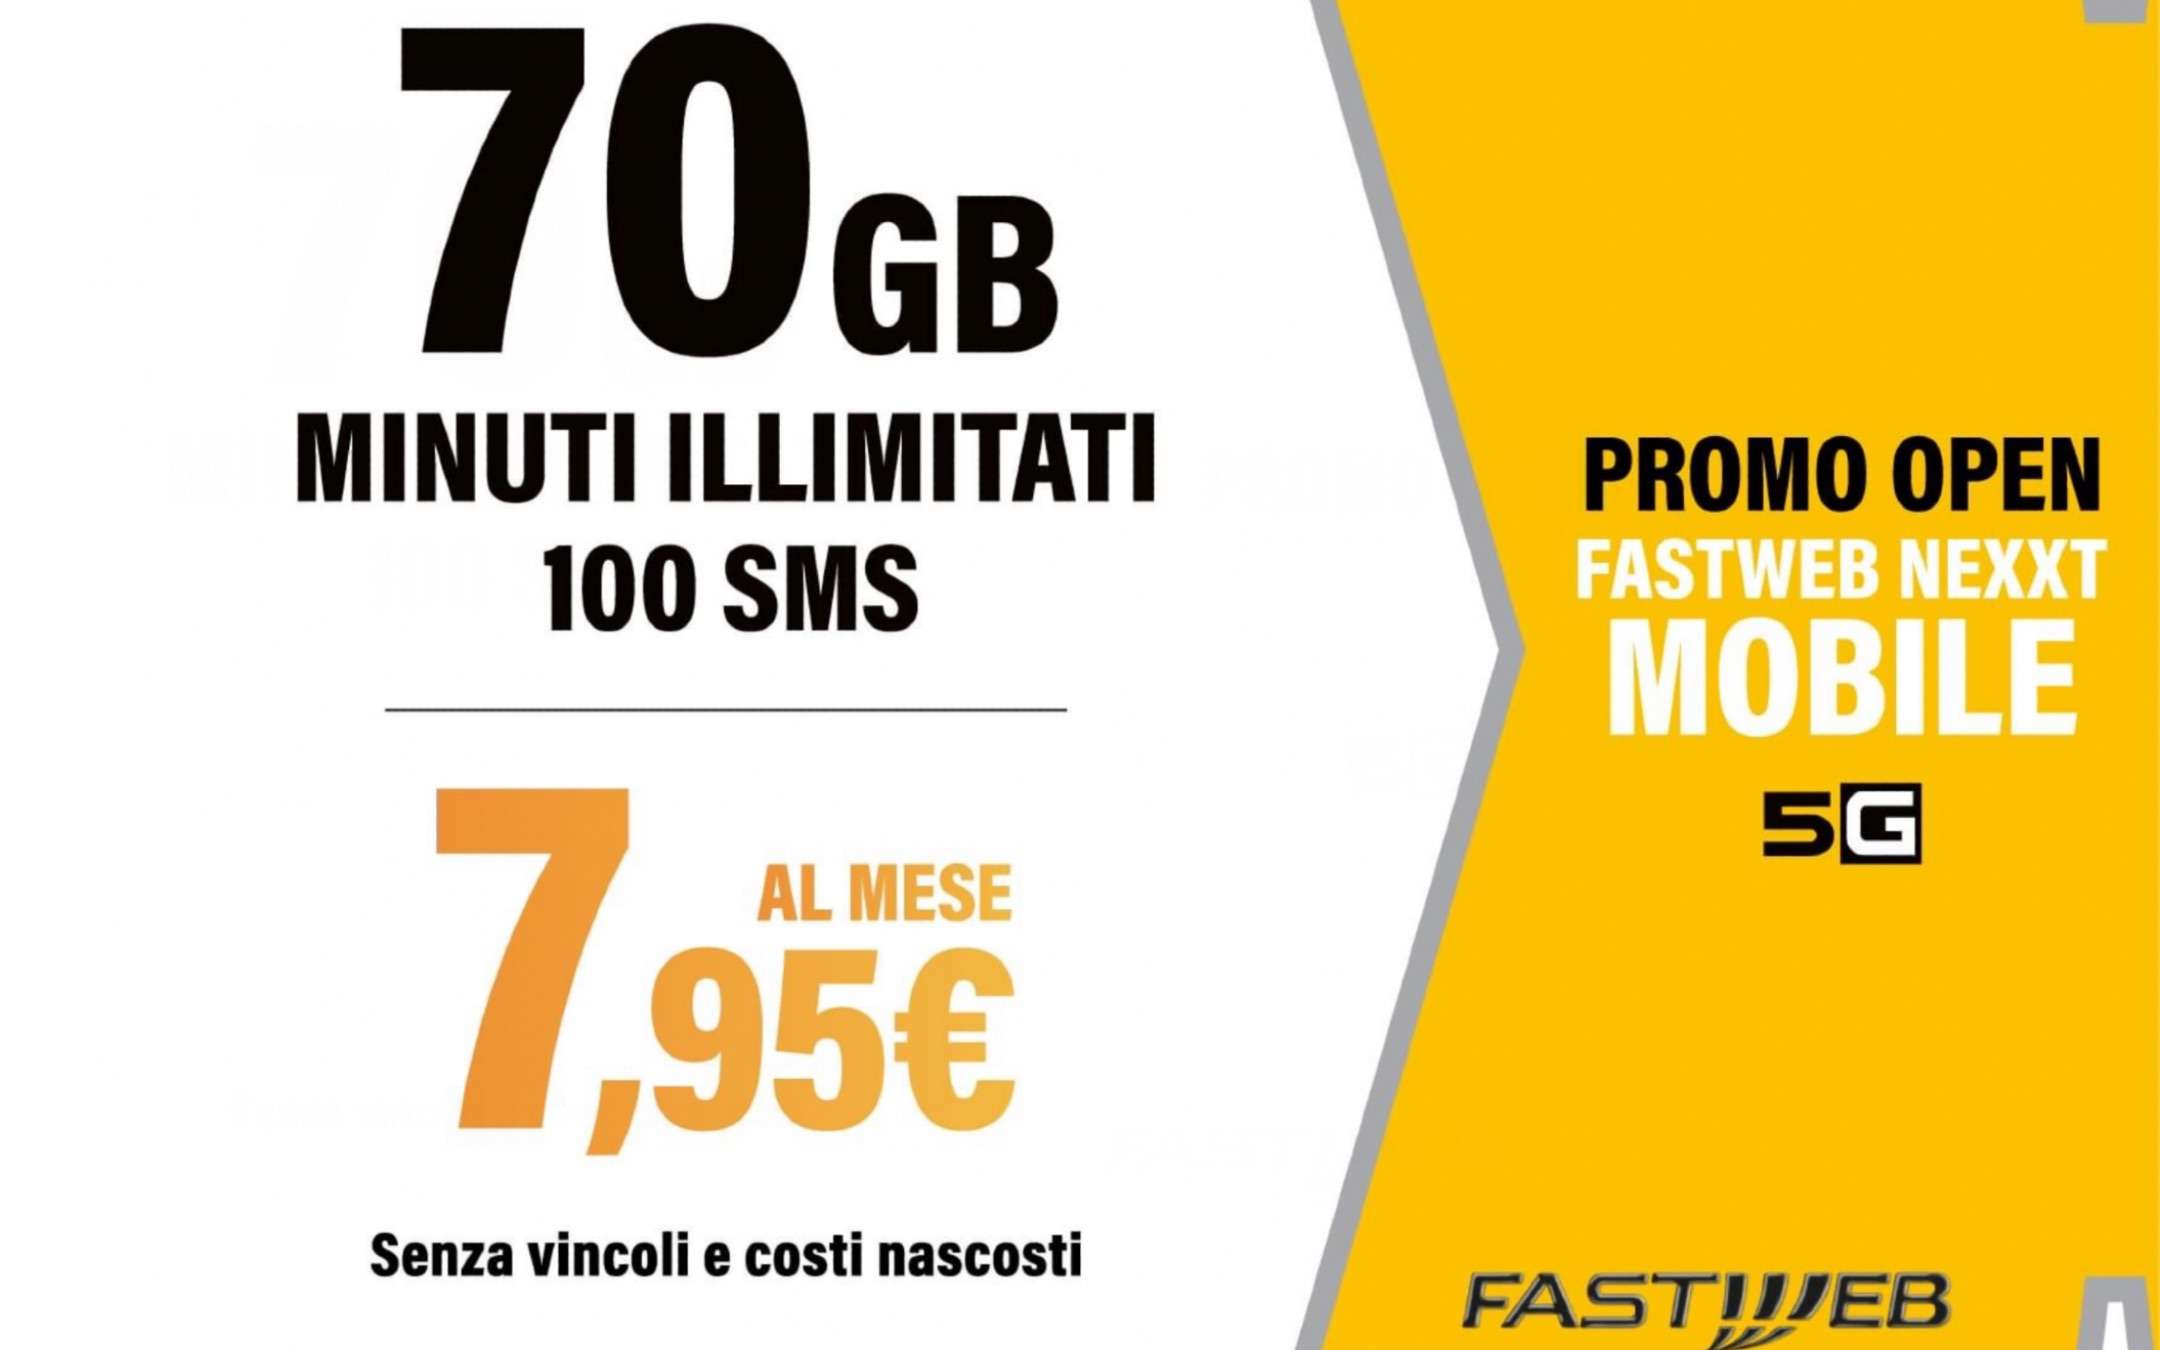 Fastweb NeXXt Mobile 5G: 70GB a 7,95€ al mese